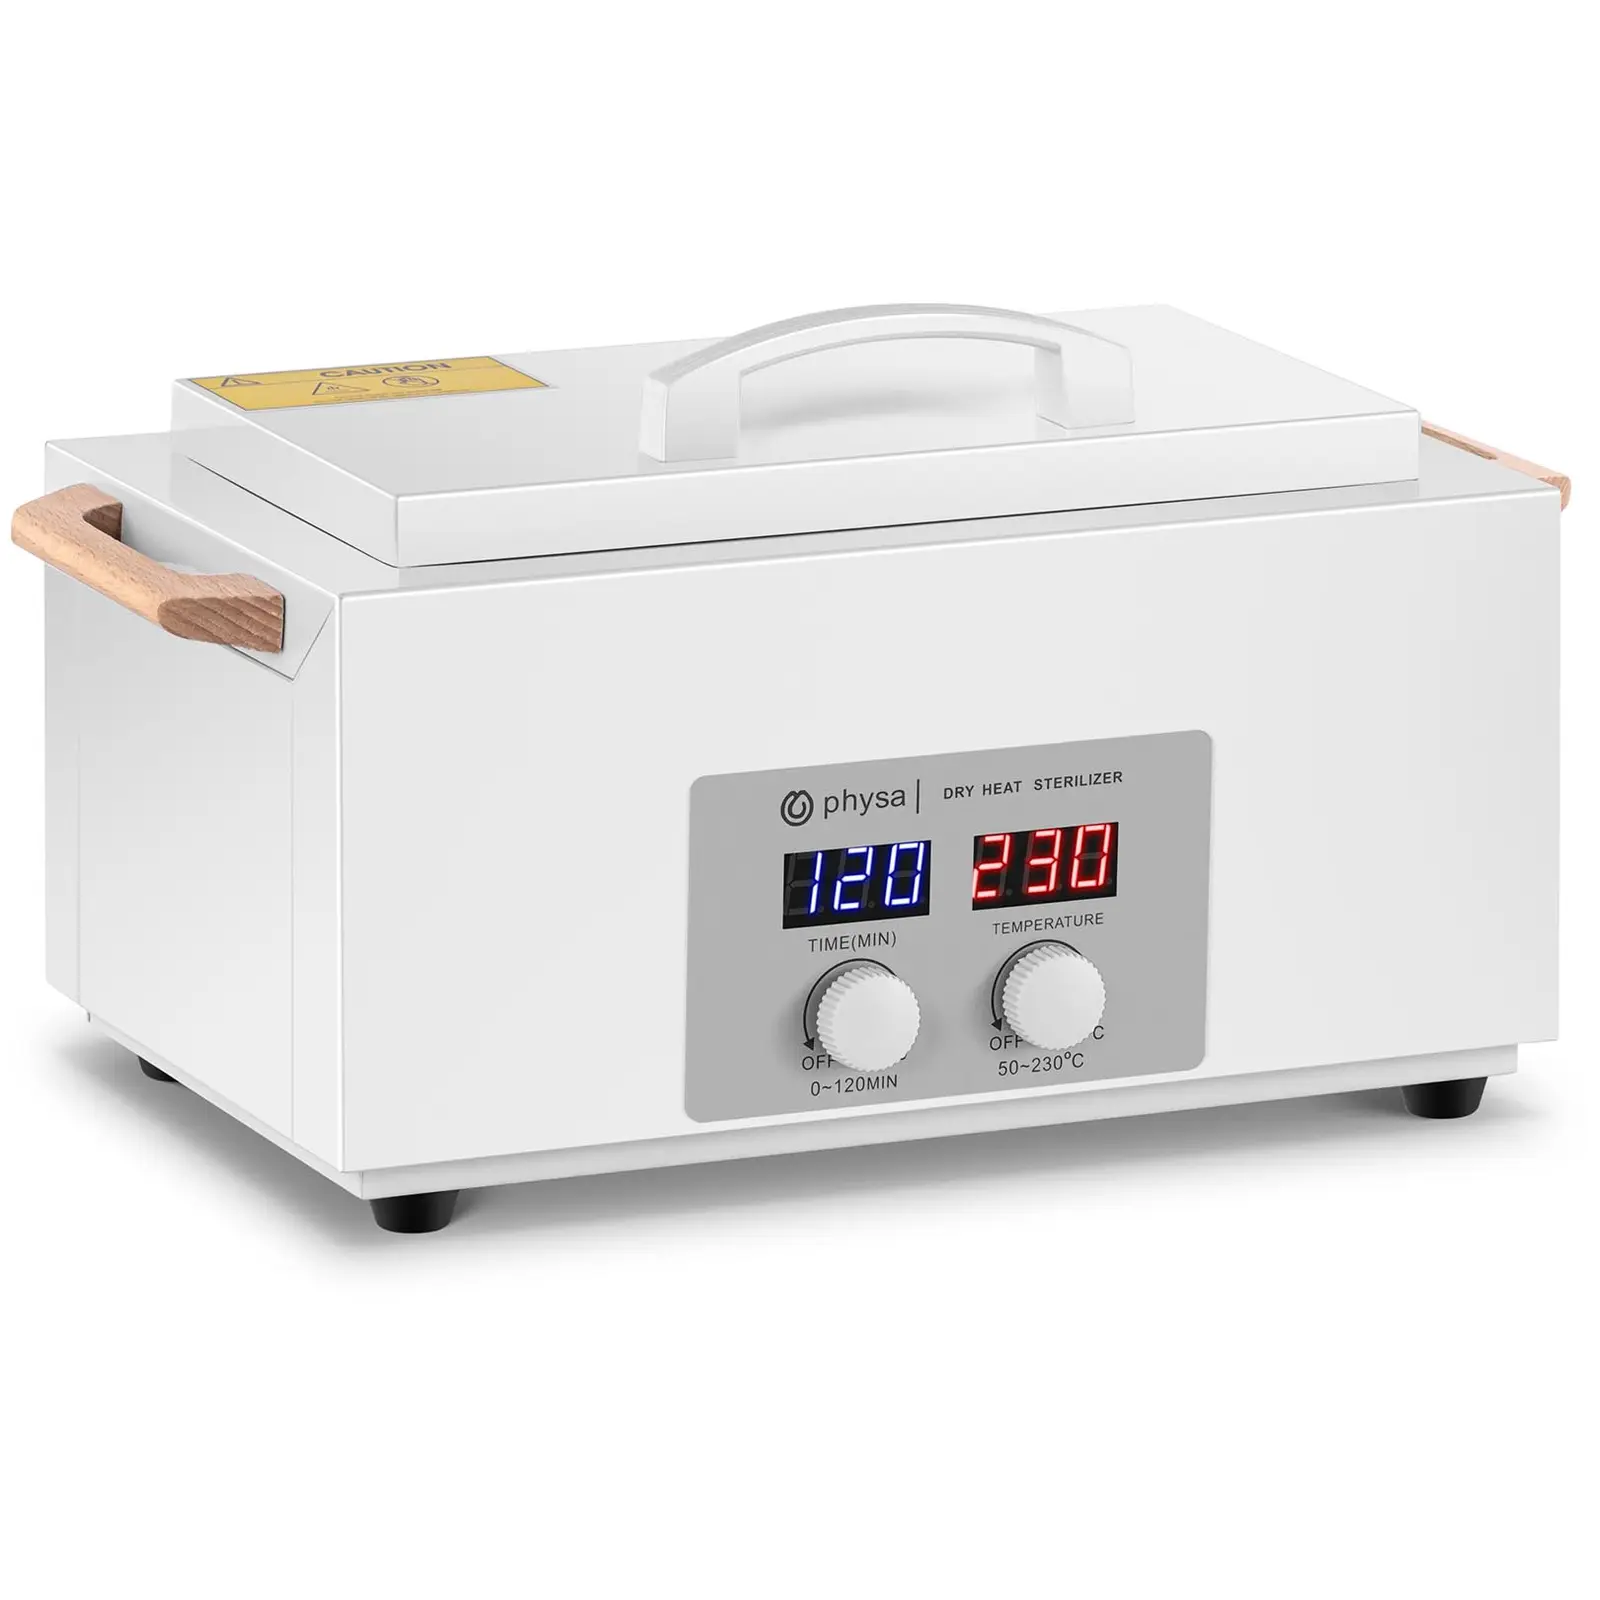 Αποστειρωτής ξηρής θερμότητας - 2 L - χρονοδιακόπτης - 50 έως 230 °C